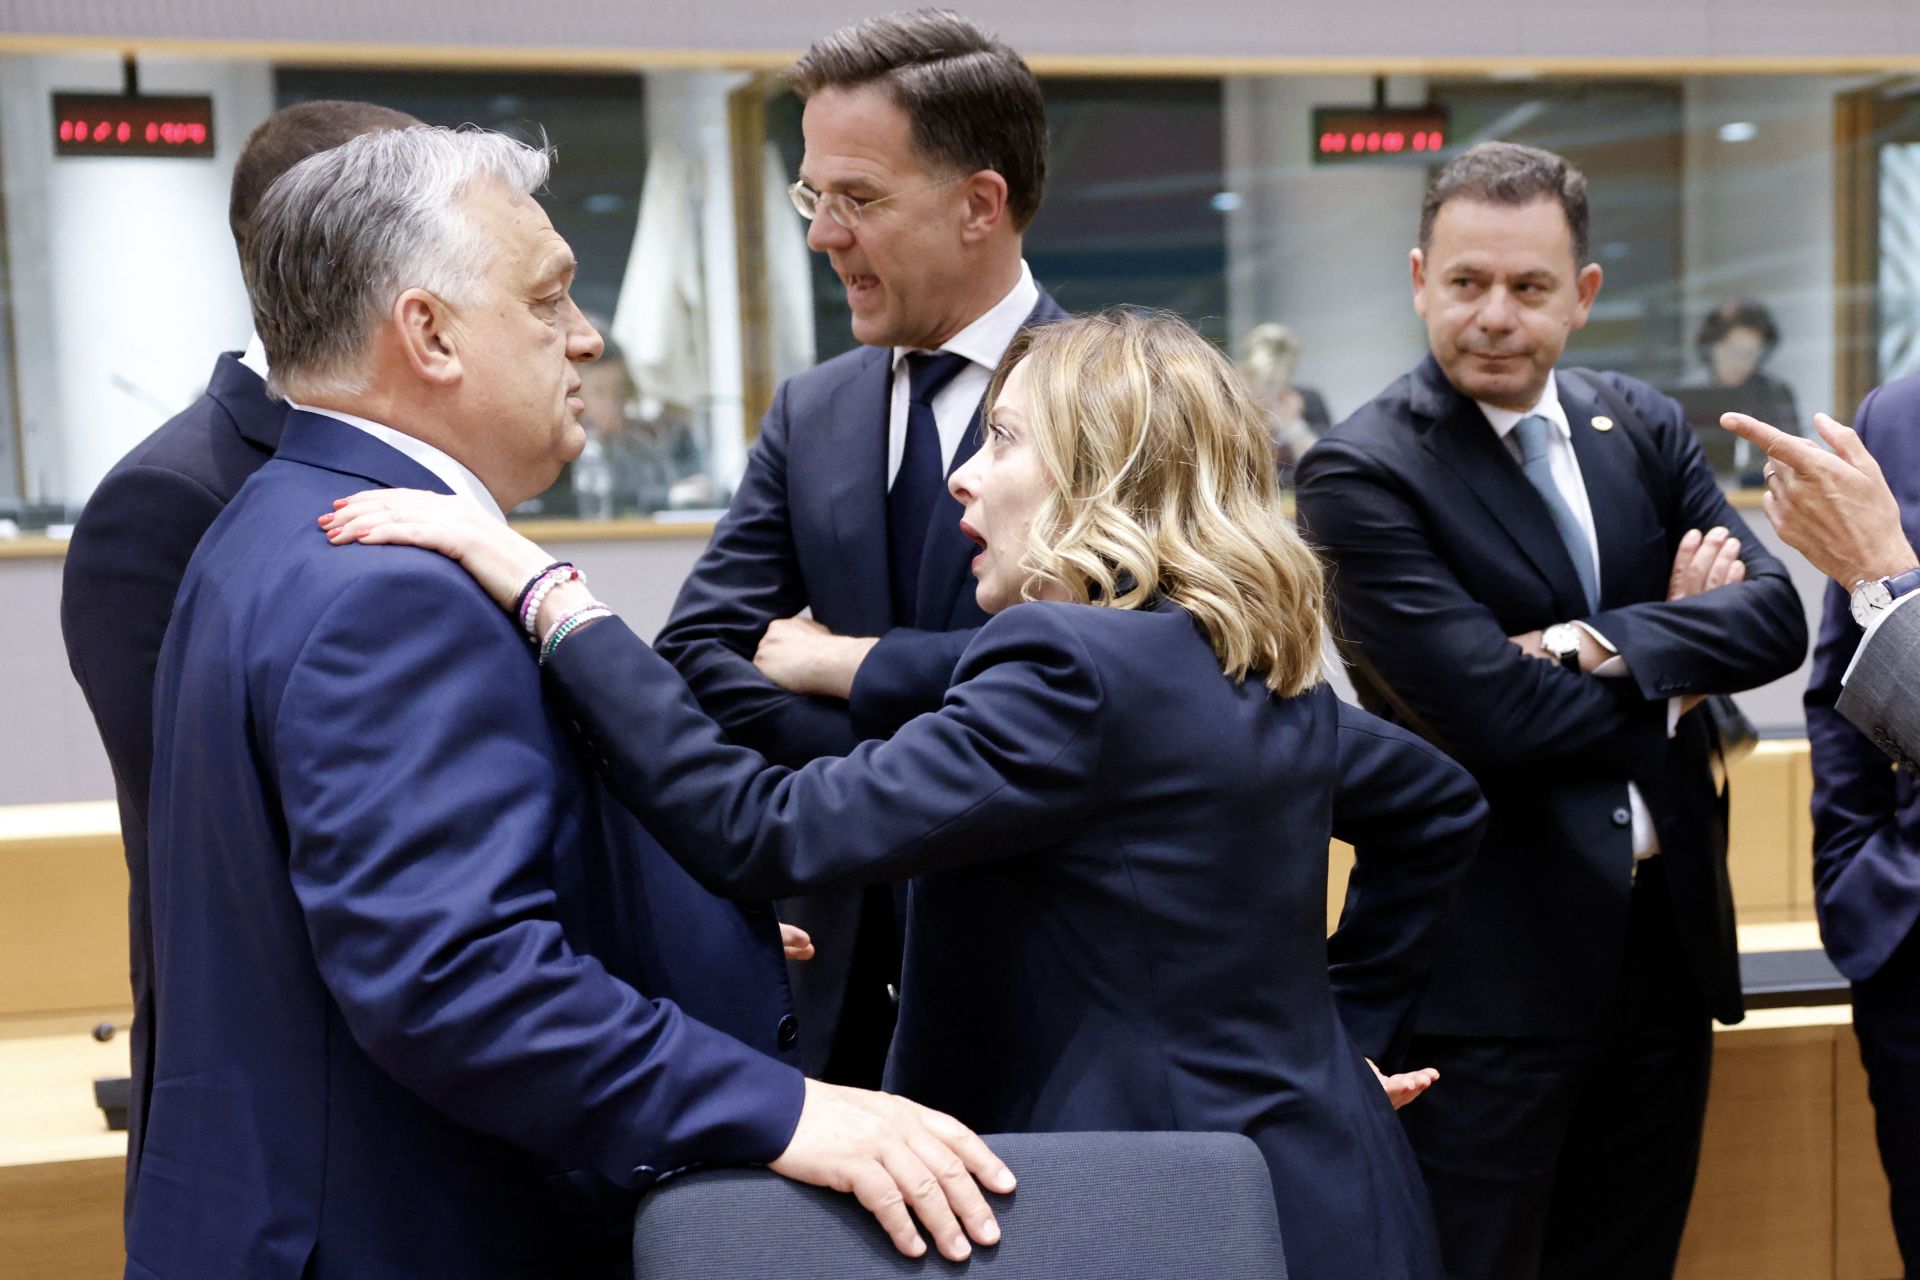  A győztesek közül kiszorult, nem tudni, hol köt ki a Fidesz